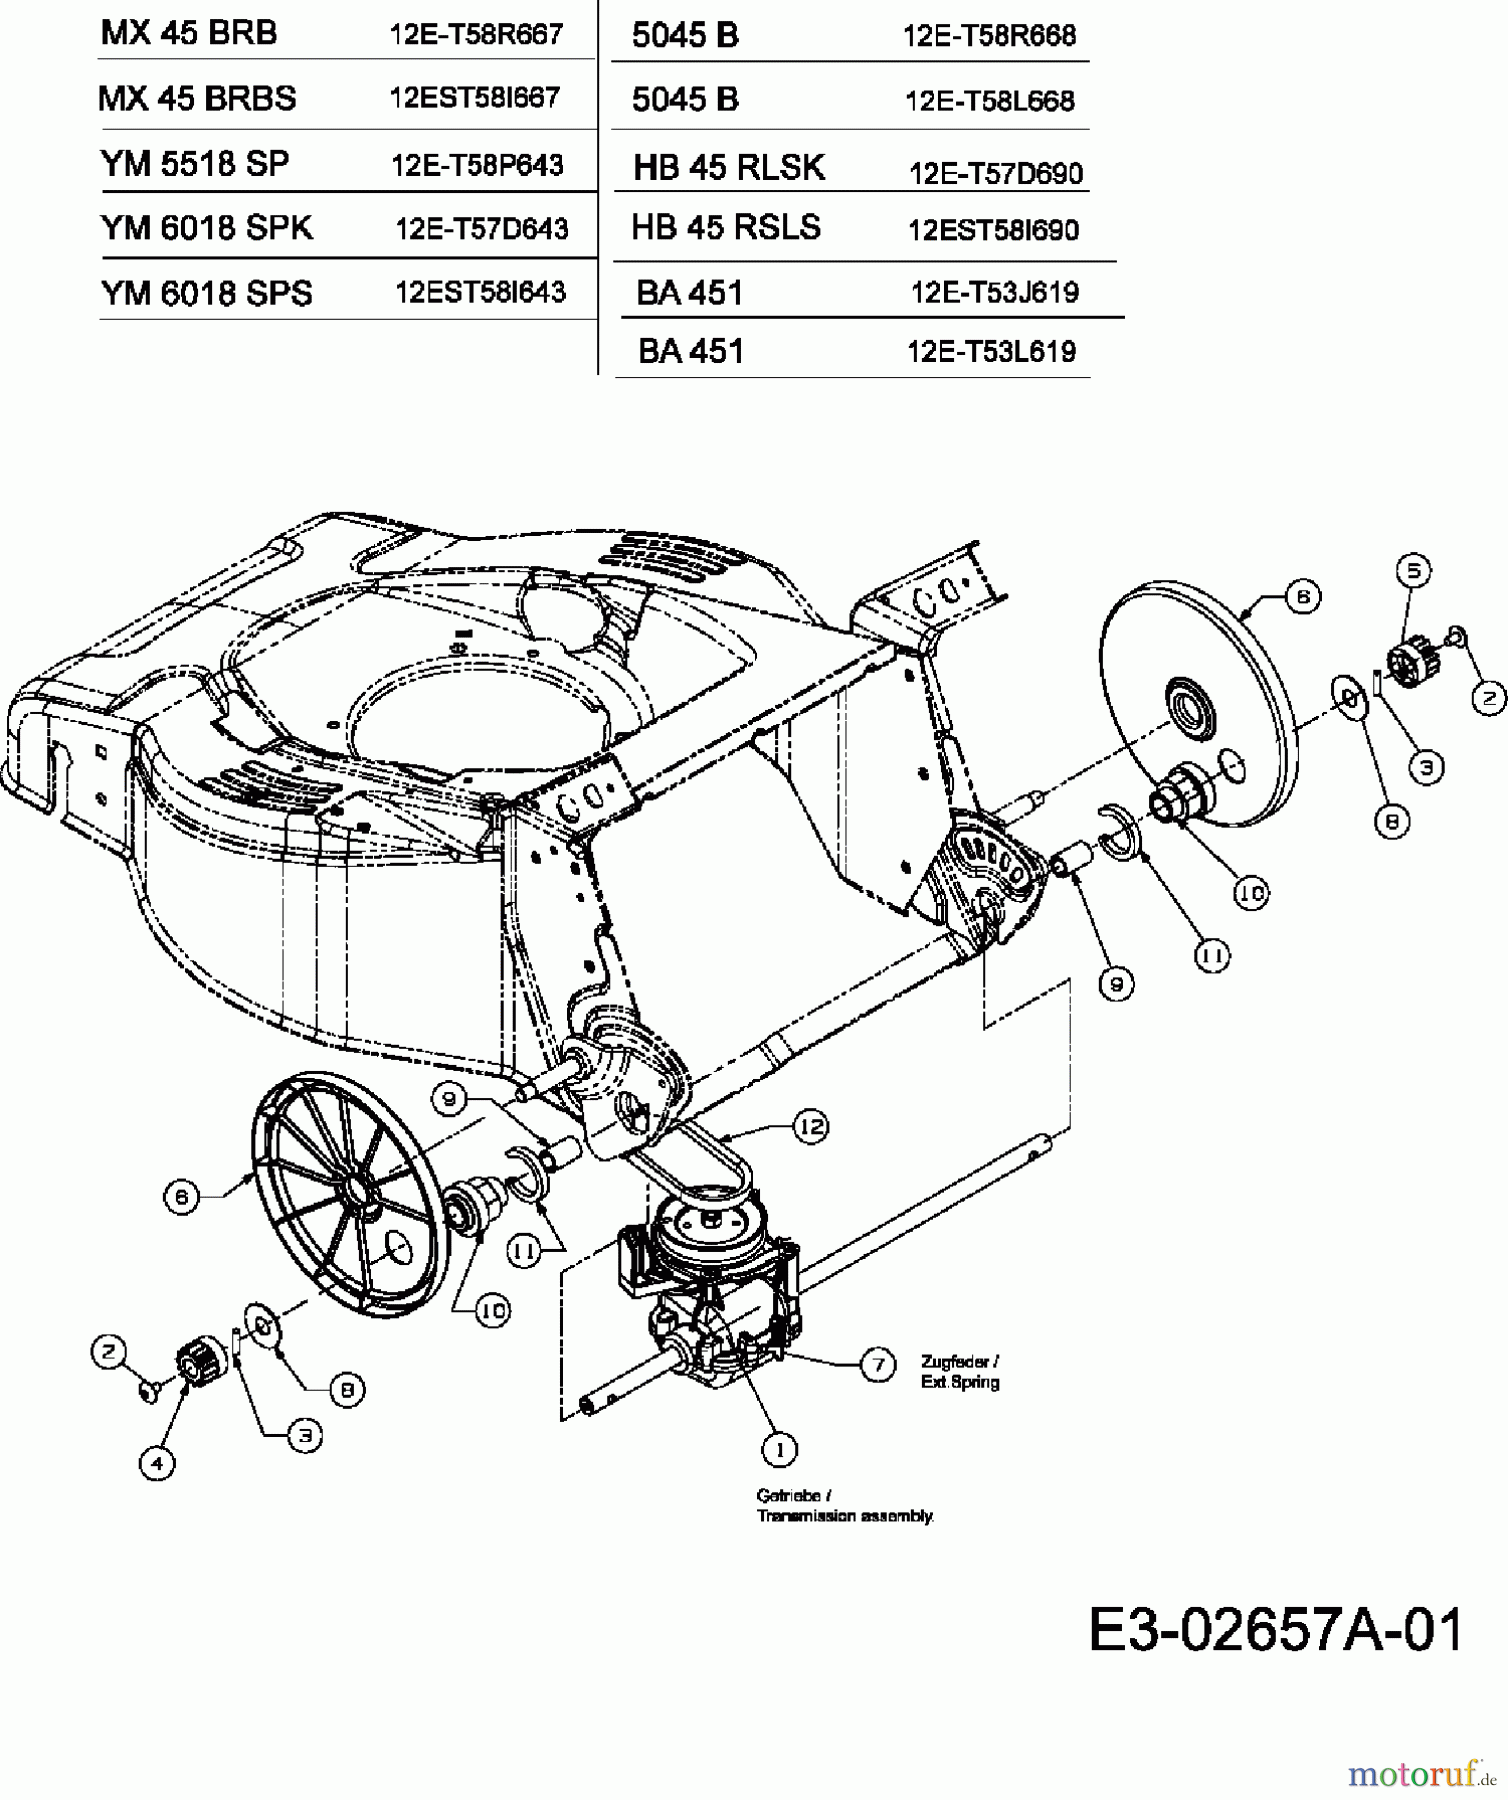  Gutbrod Petrol mower self propelled HB 45 RLSK 12E-T57D690  (2006) Gearbox 618-04364